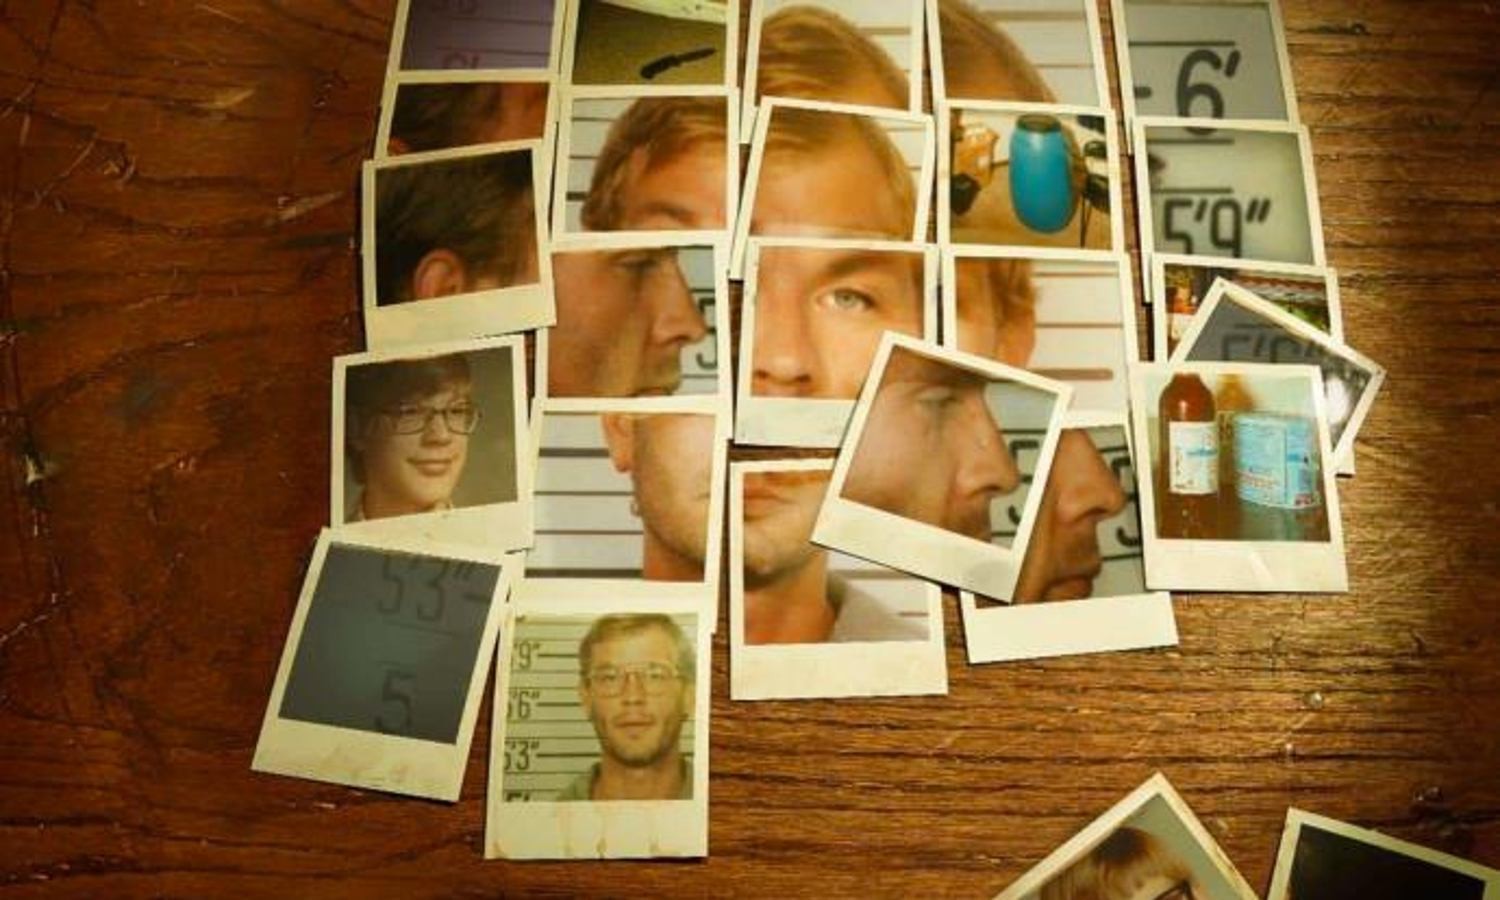 Fotografías polaroid llevaron a Jeffrey Dahmer a prisión